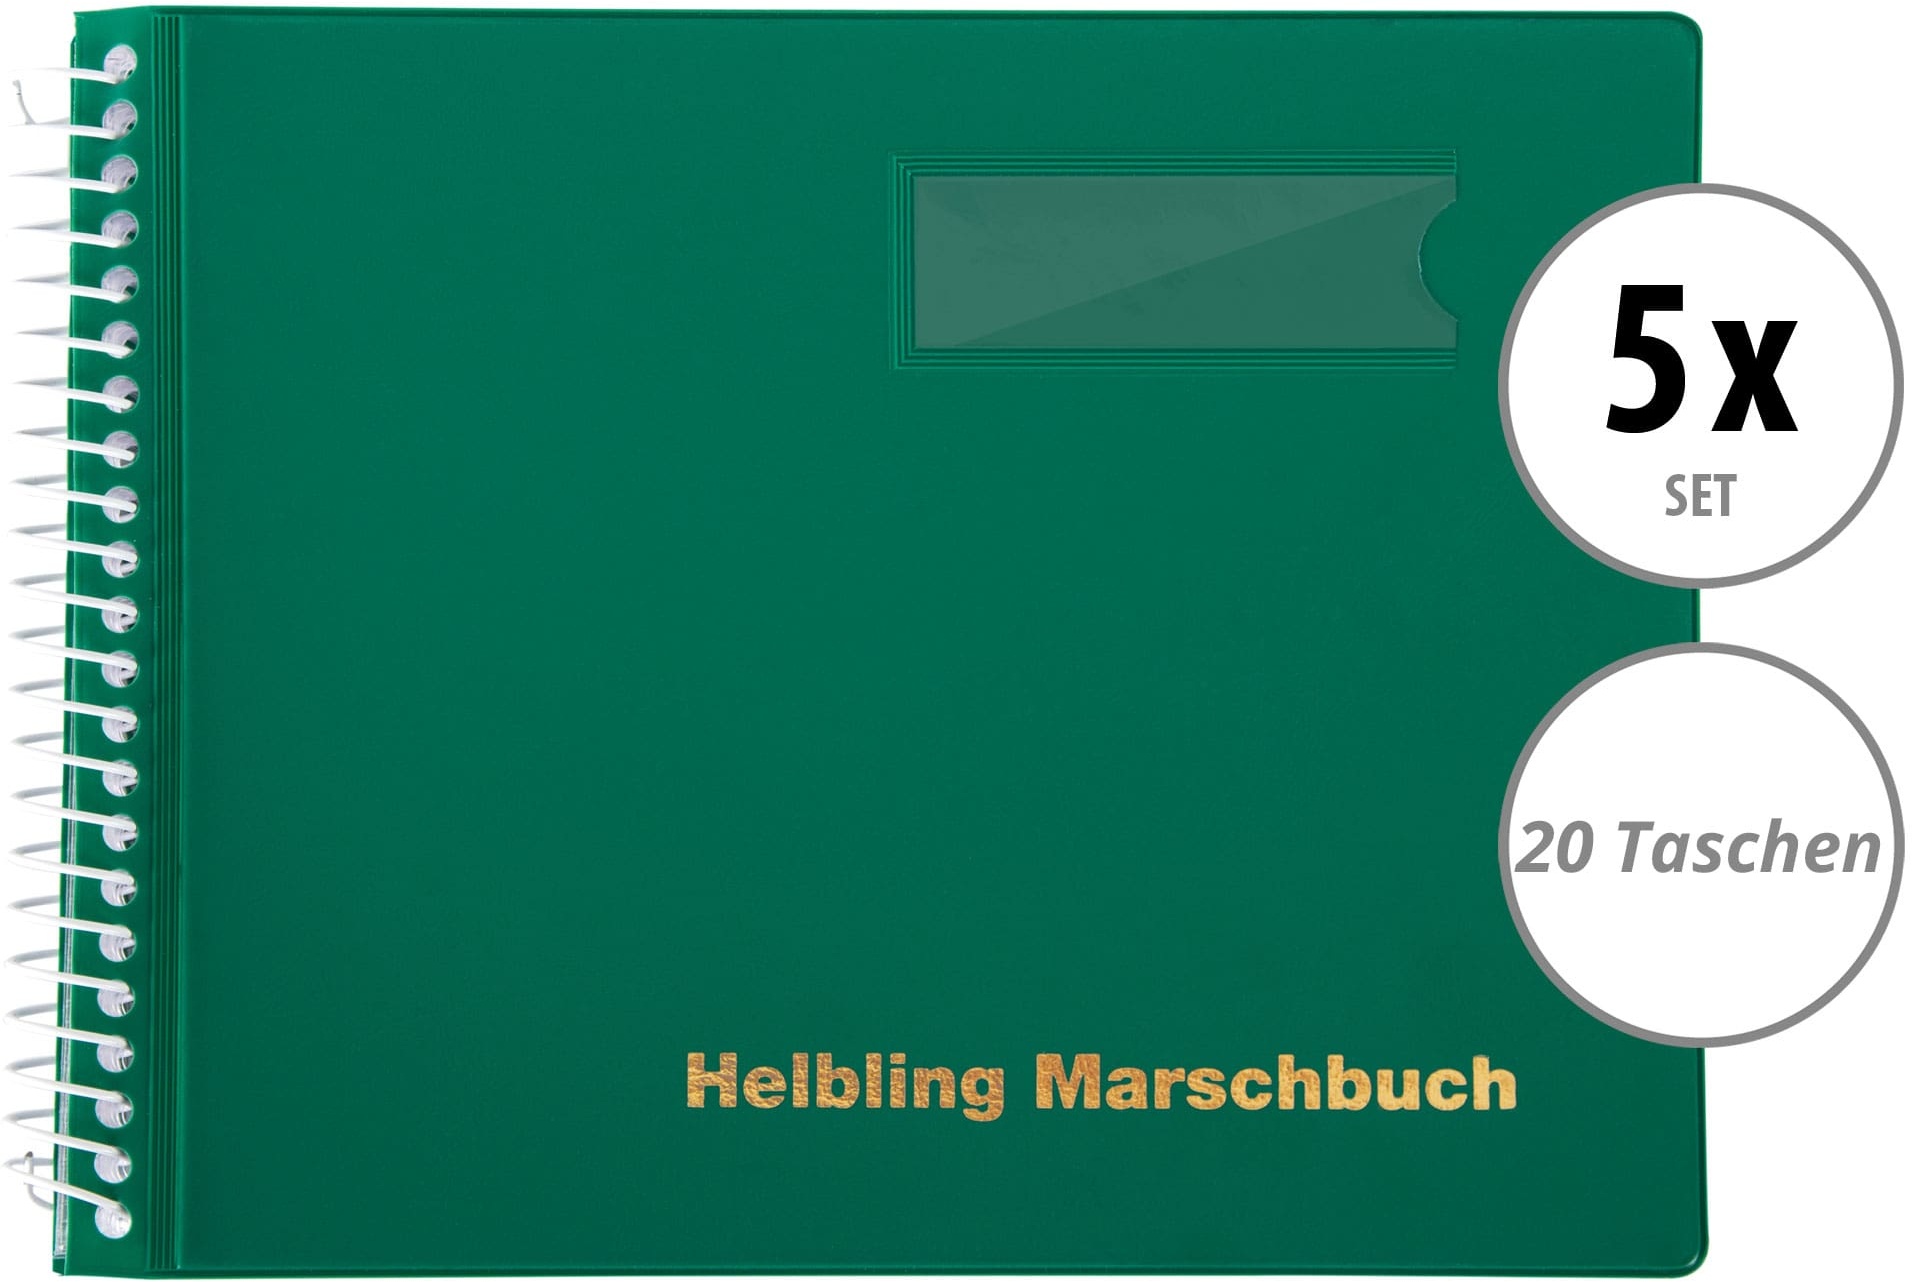 Helbling BMG20 Marschbuch grün 20 Taschen 5x Set